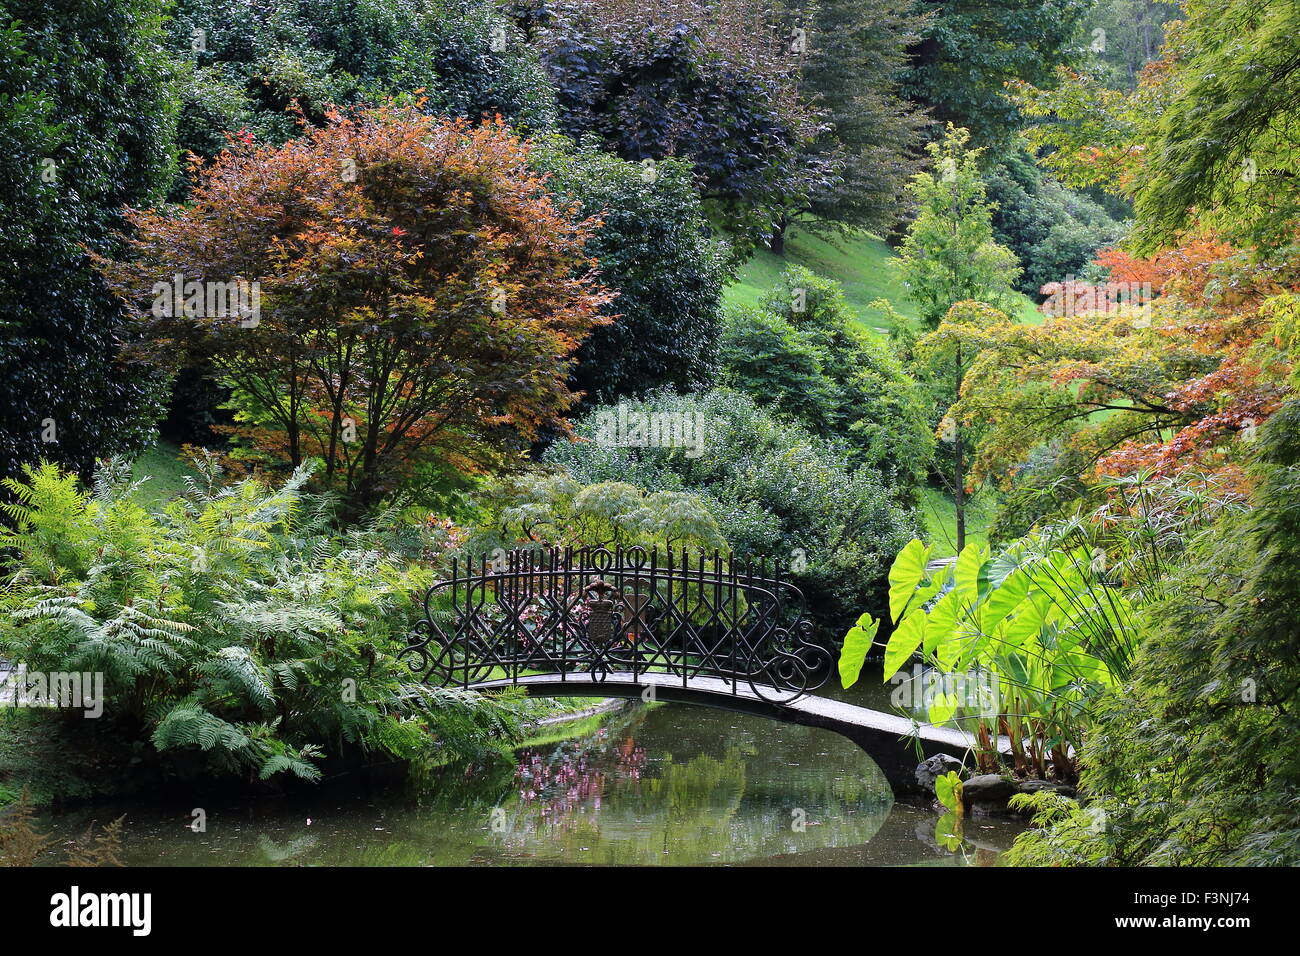 Garden of Villa Melzi, Bellagio, Lake Como, Italy Stock Photo